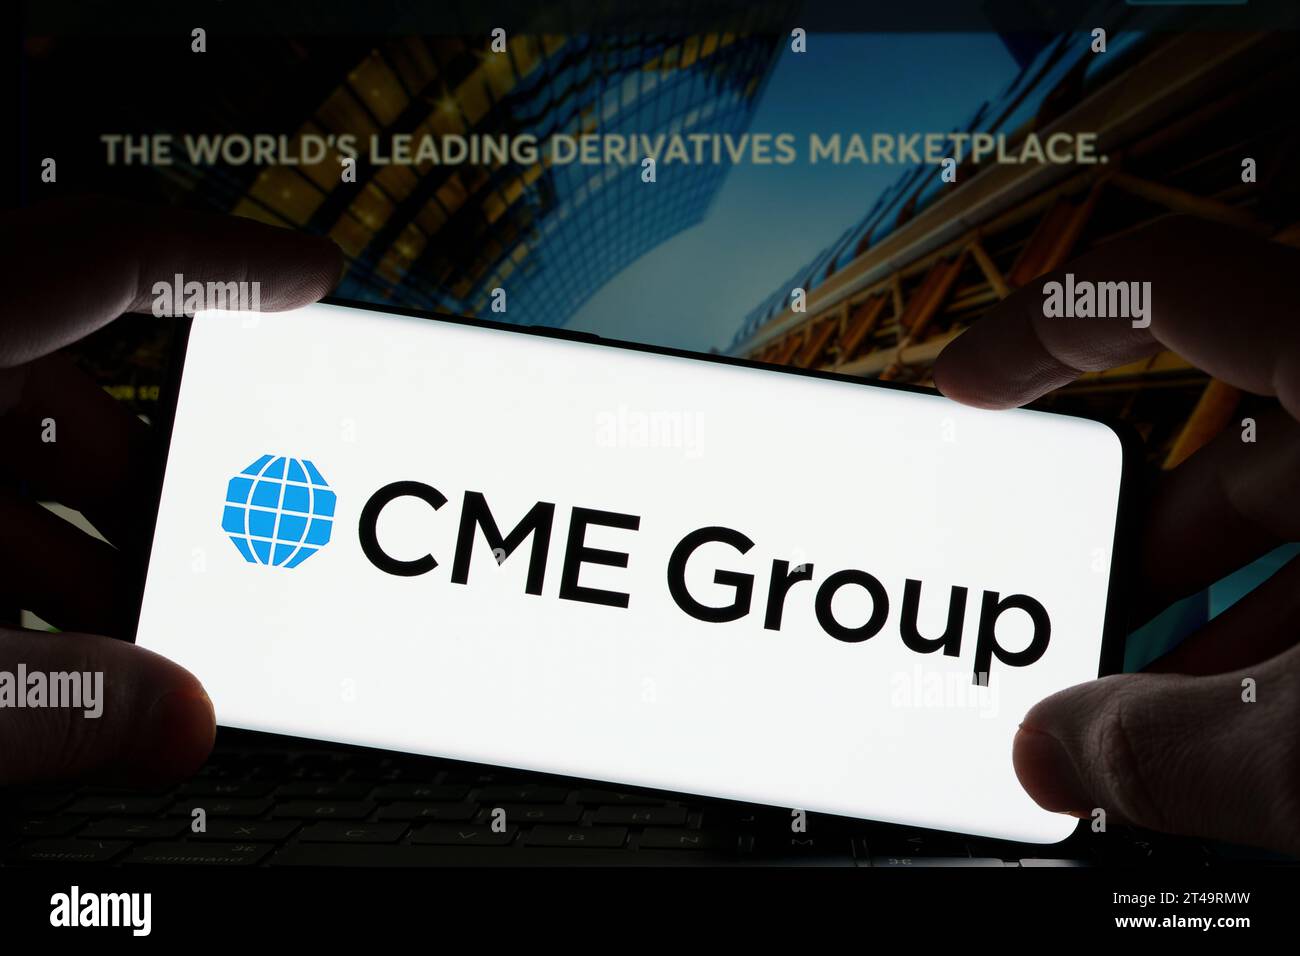 Logo du groupe CME vu sur le smartphone et le site Web de CME à l'arrière-plan flou. Stafford, Royaume-Uni, 29 octobre 2023 Banque D'Images